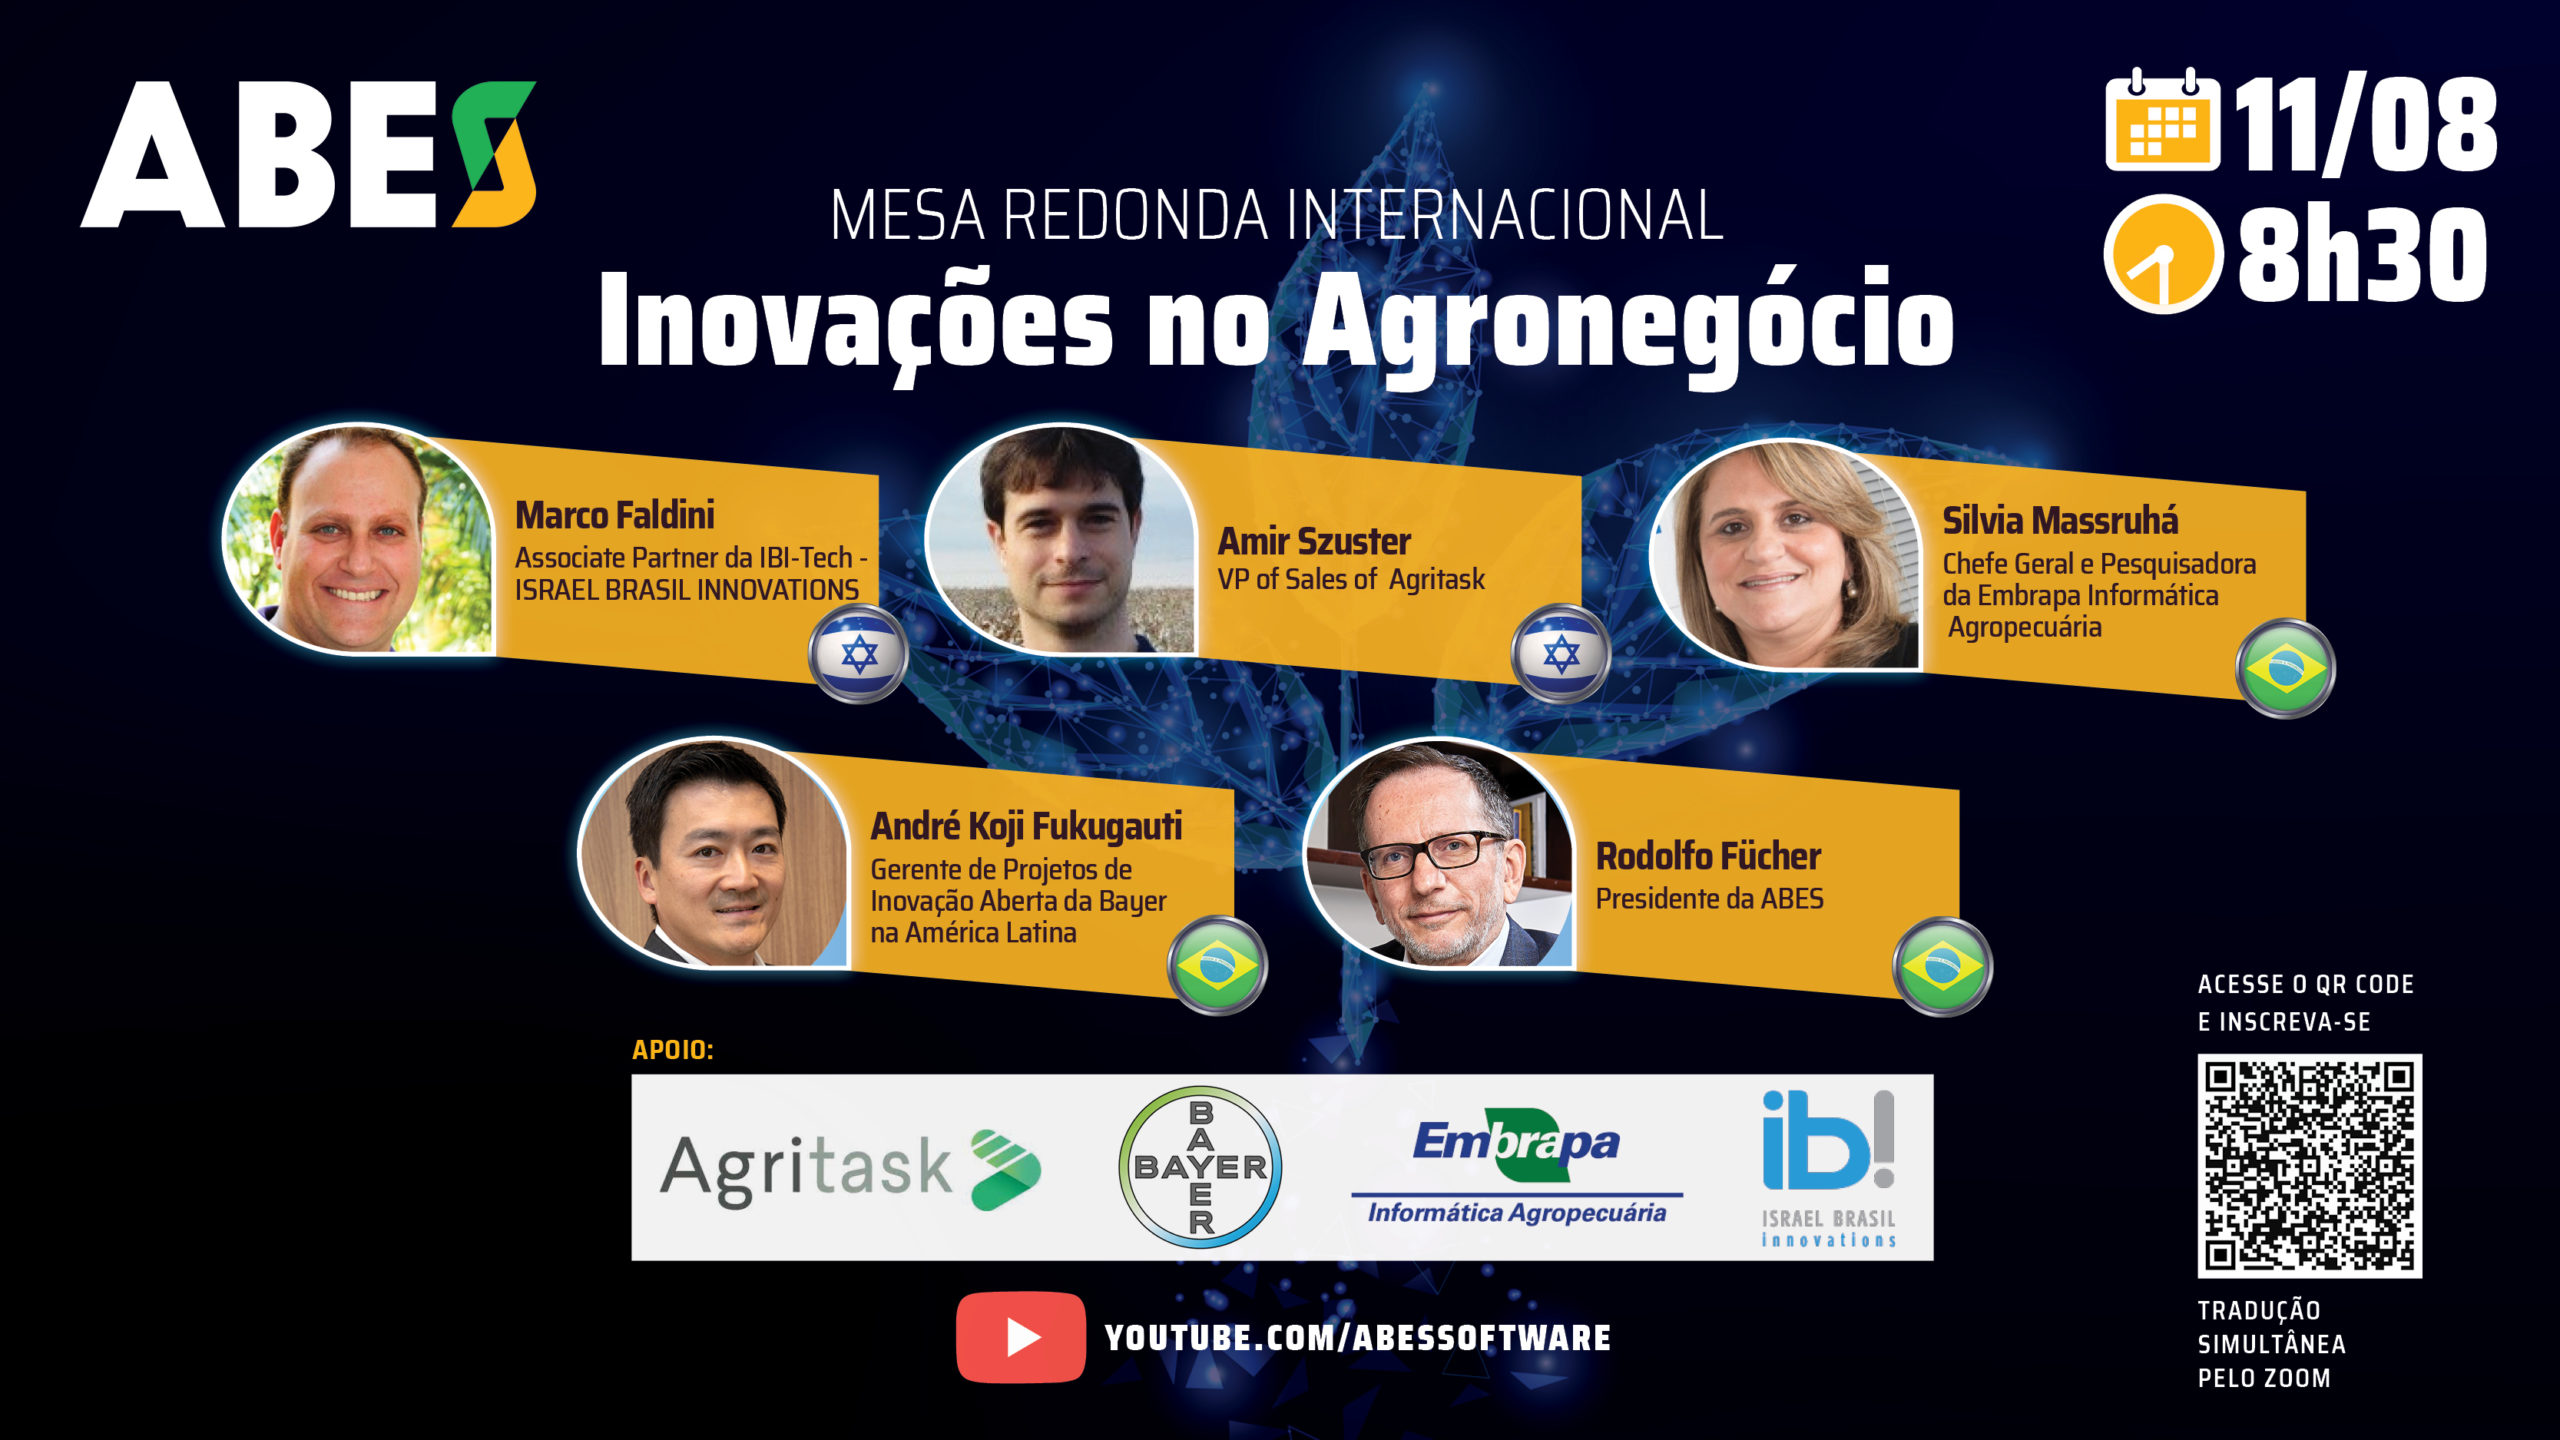 ABES promoverá Mesa Redonda Internacional Inovações no Agronegócio no dia 11/08